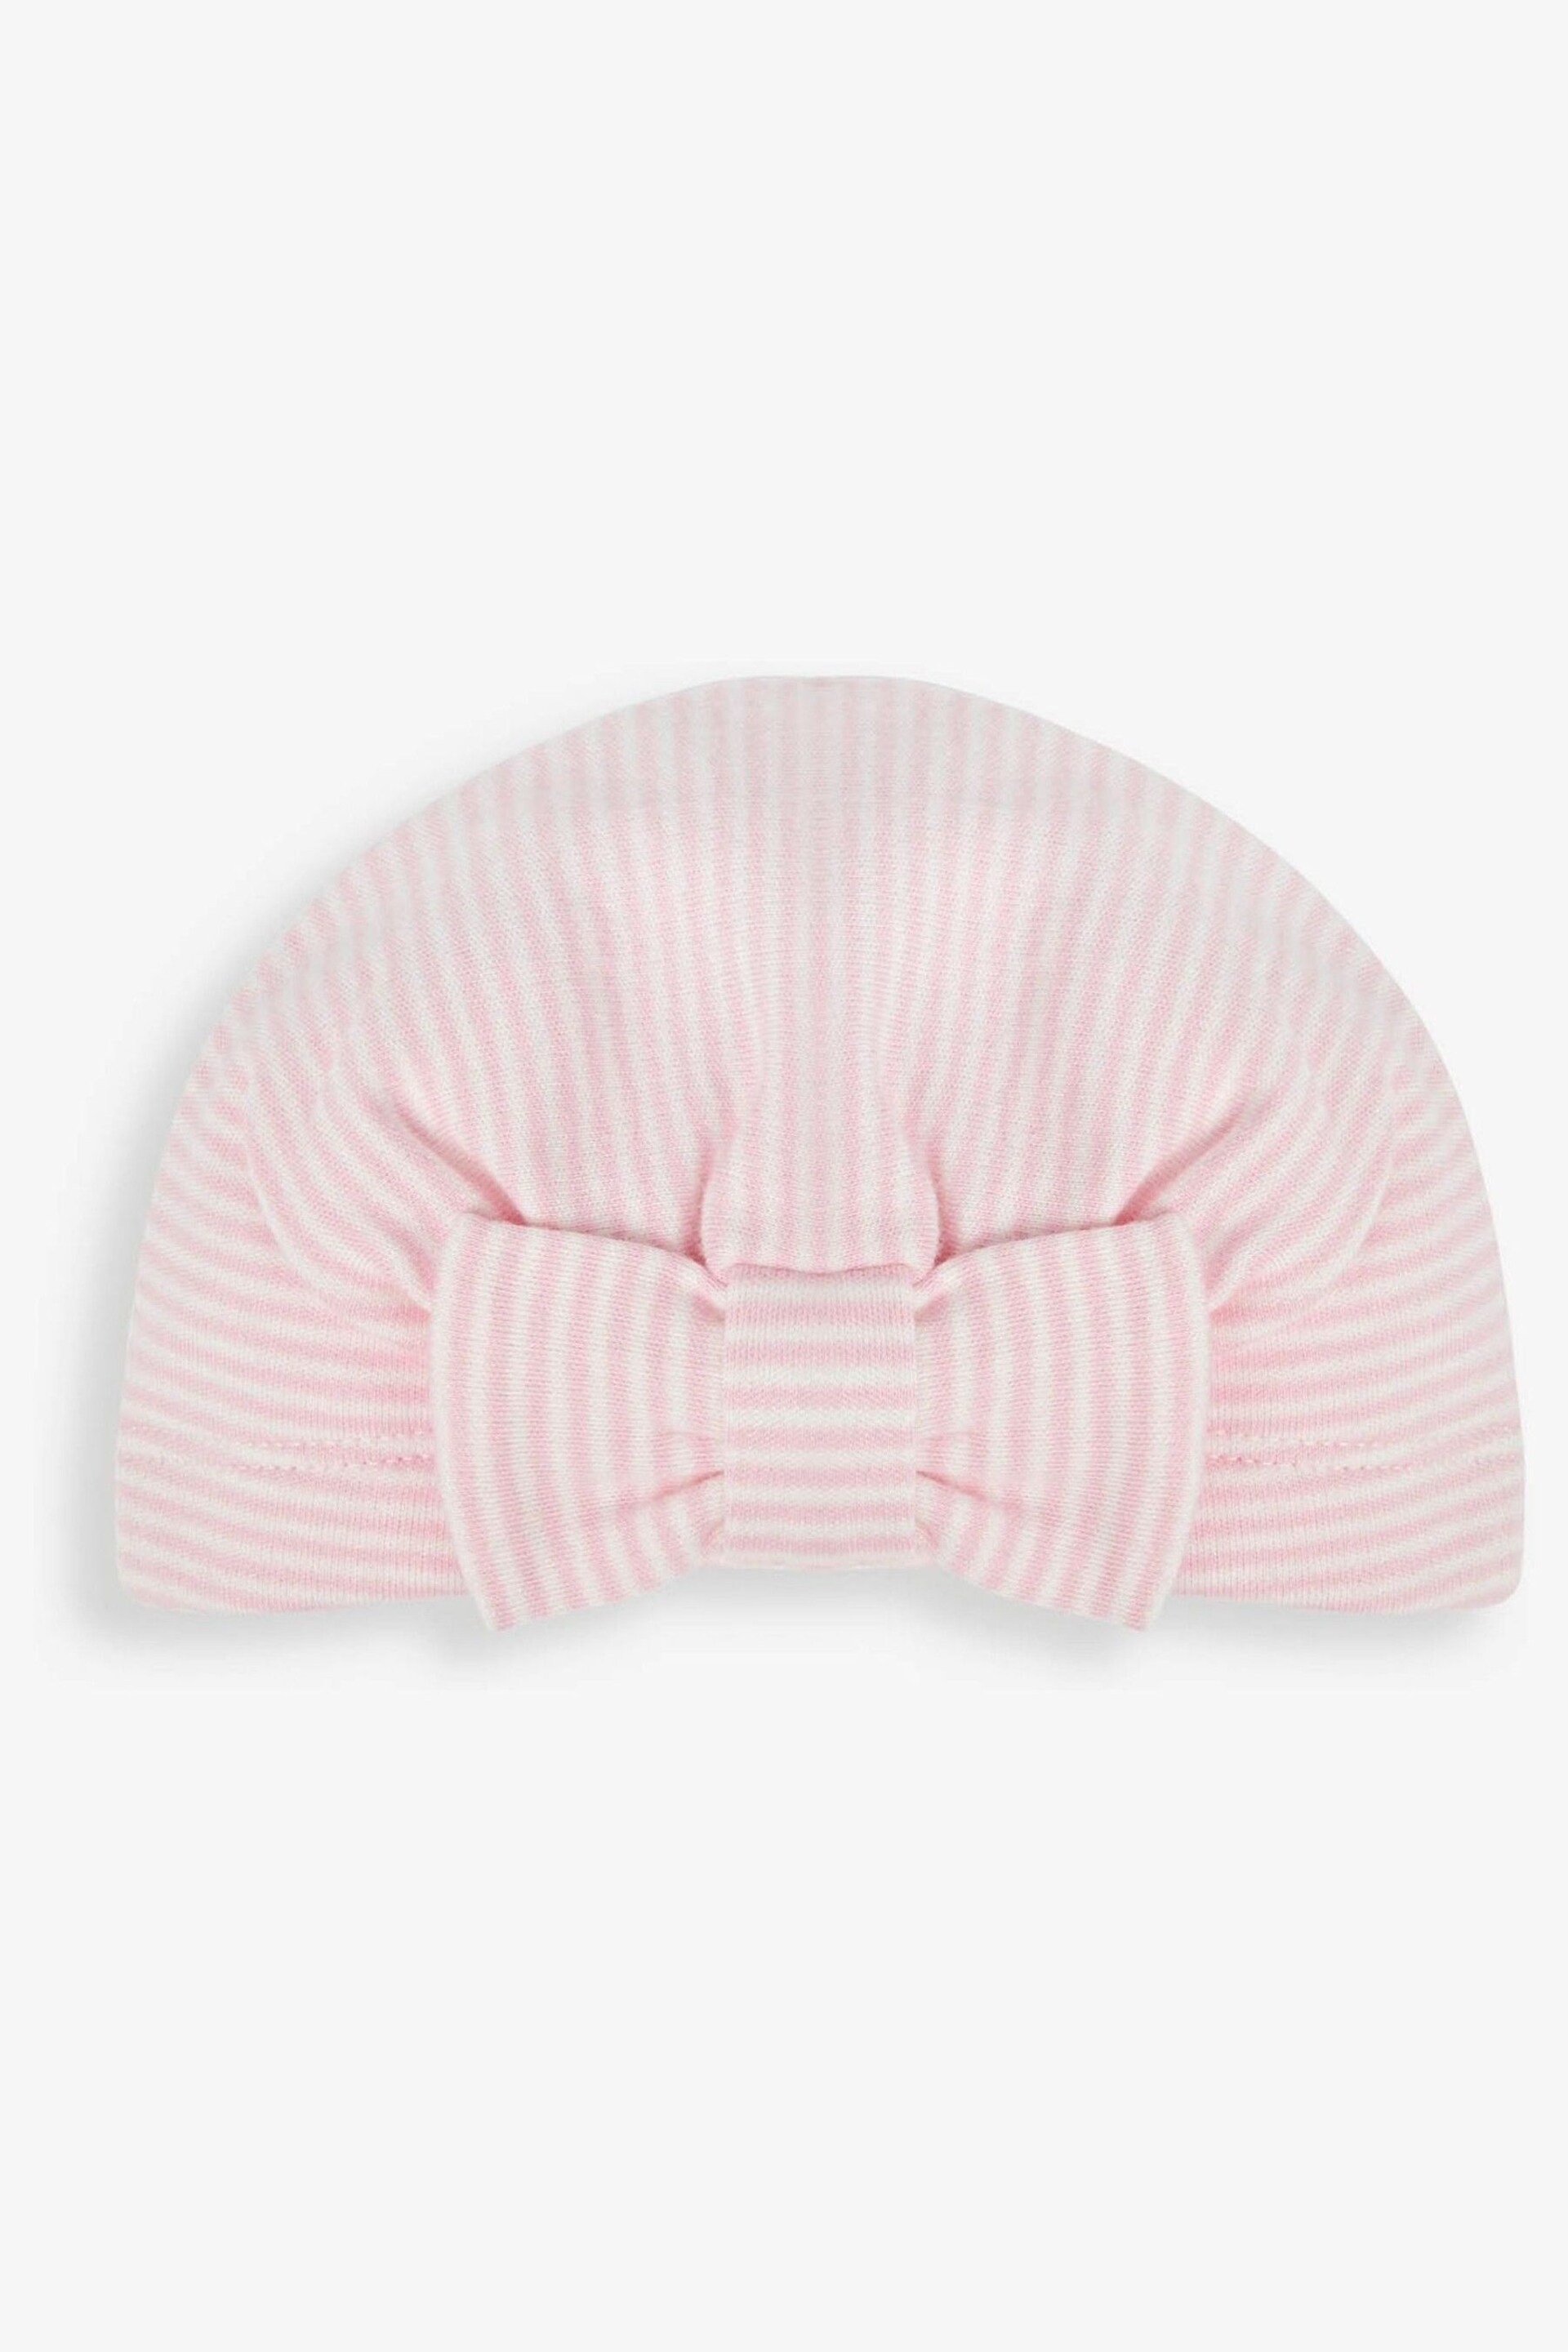 JoJo Maman Bébé Pink Turban - Image 1 of 2